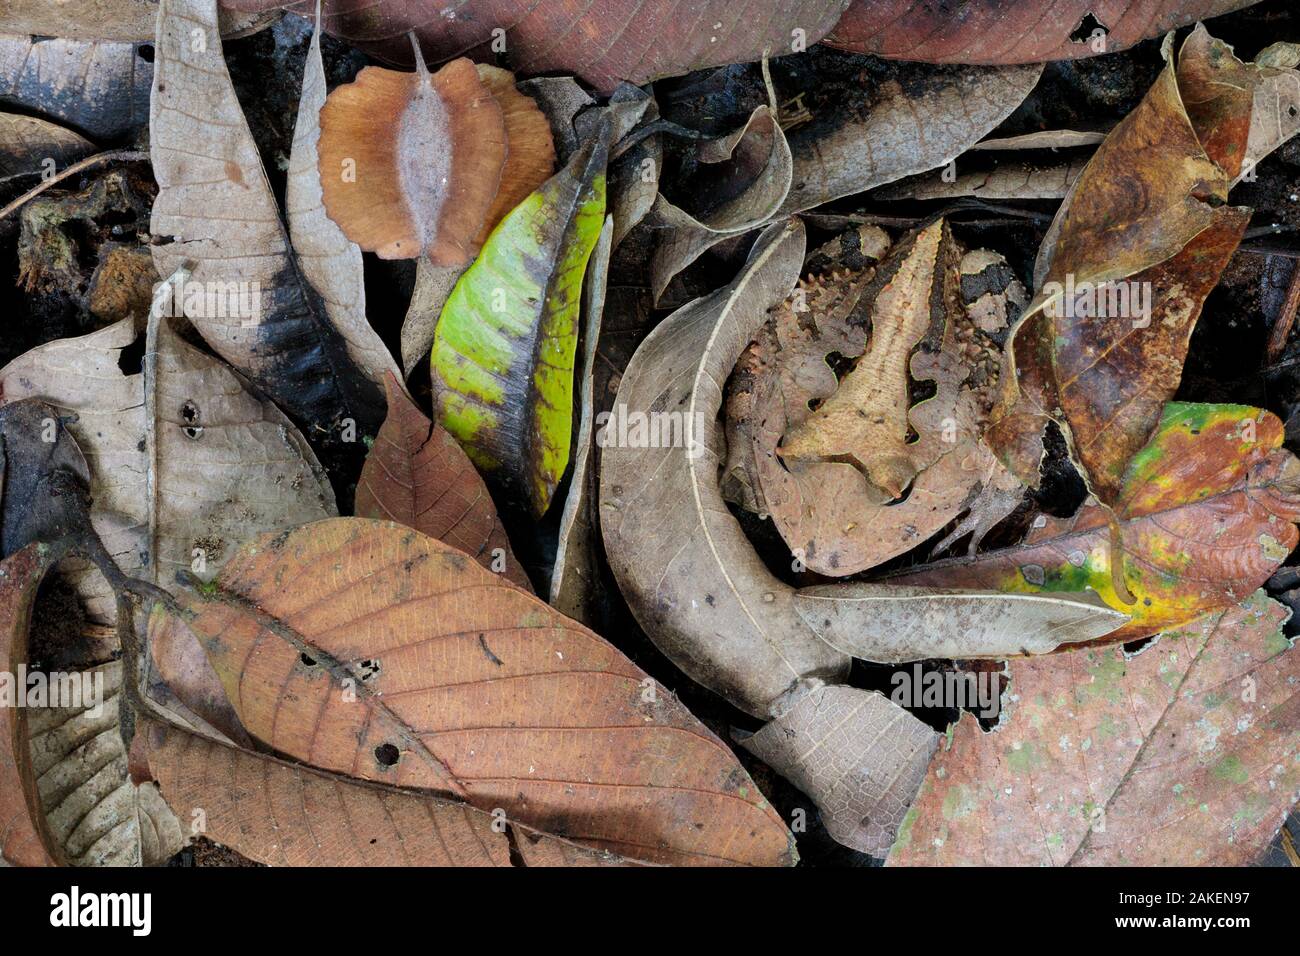 Horned Frog amazónica (Ceratophrys cornuta) camuflado entre la hojarasca de bosque tropical piso, esperando para emboscar a las presas que pasan. Reserva de la Biosfera del Manu, Amazonia, Perú. De noviembre. Foto de stock